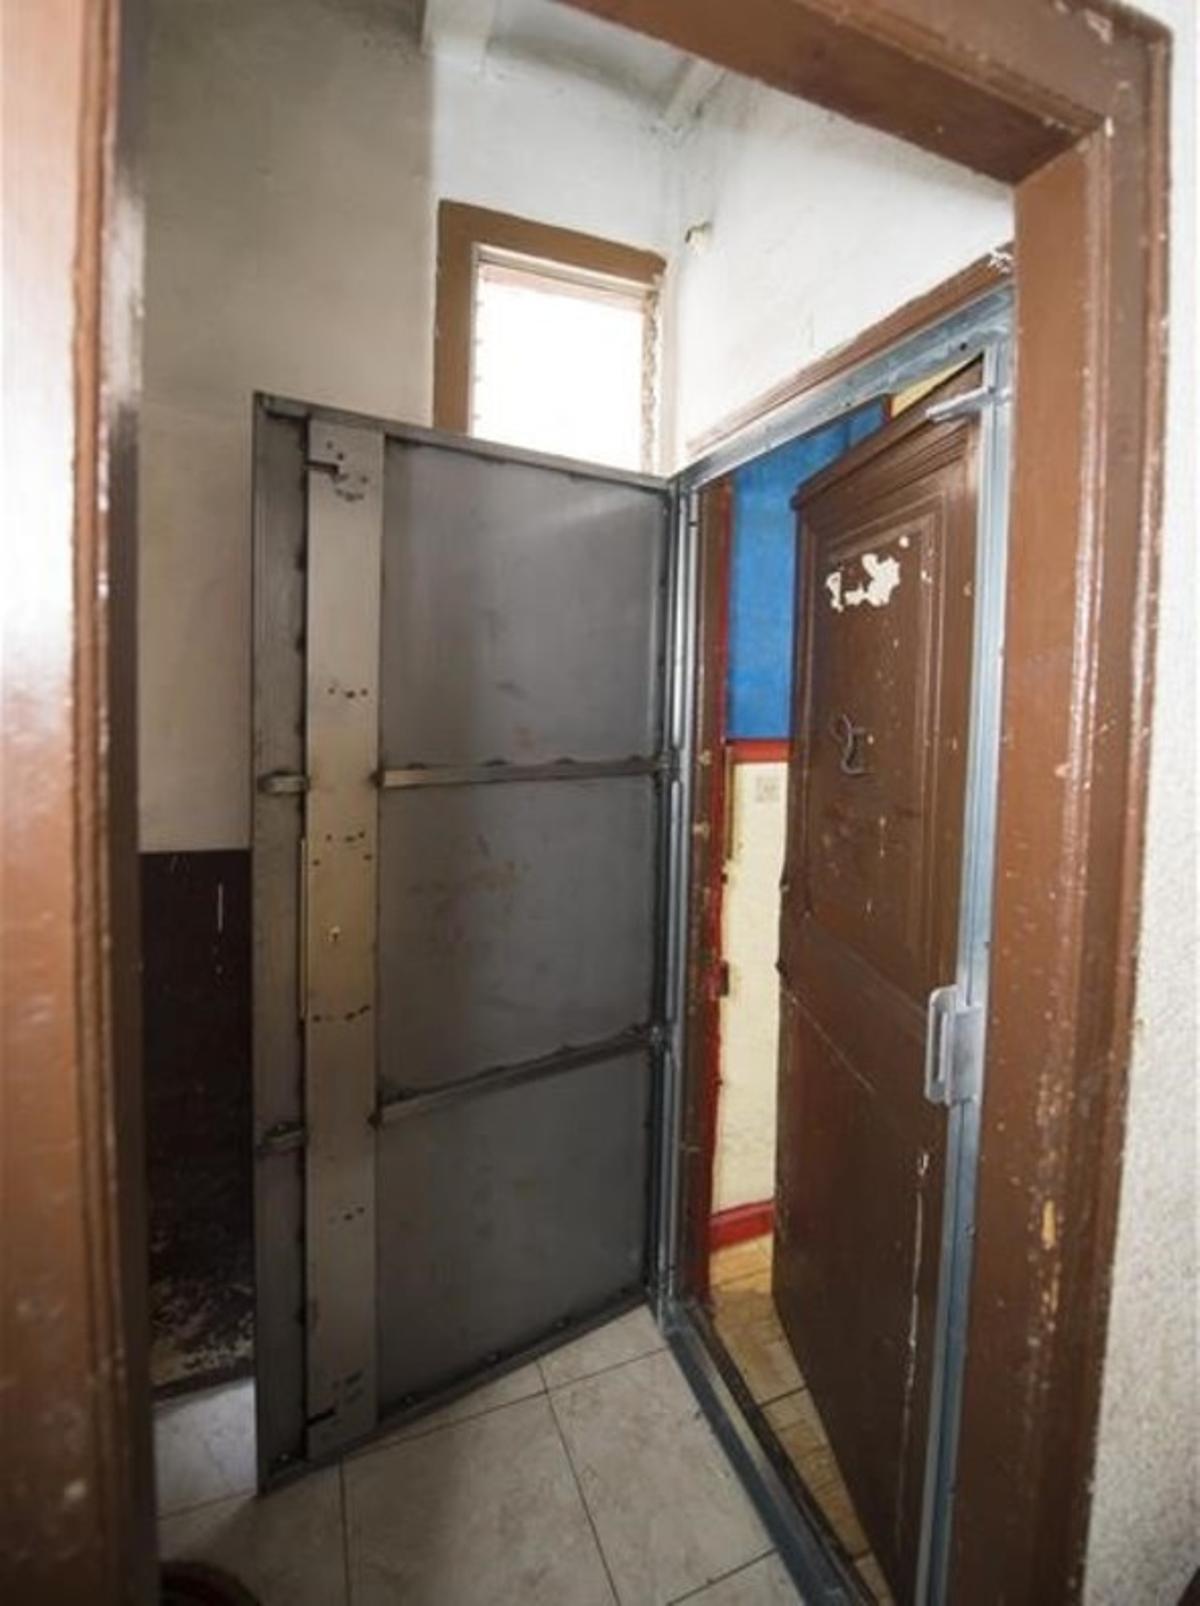 Puerta anti-okupas que la empresa instaló para blindar la vivienda una vez los inquilinos la dejen.